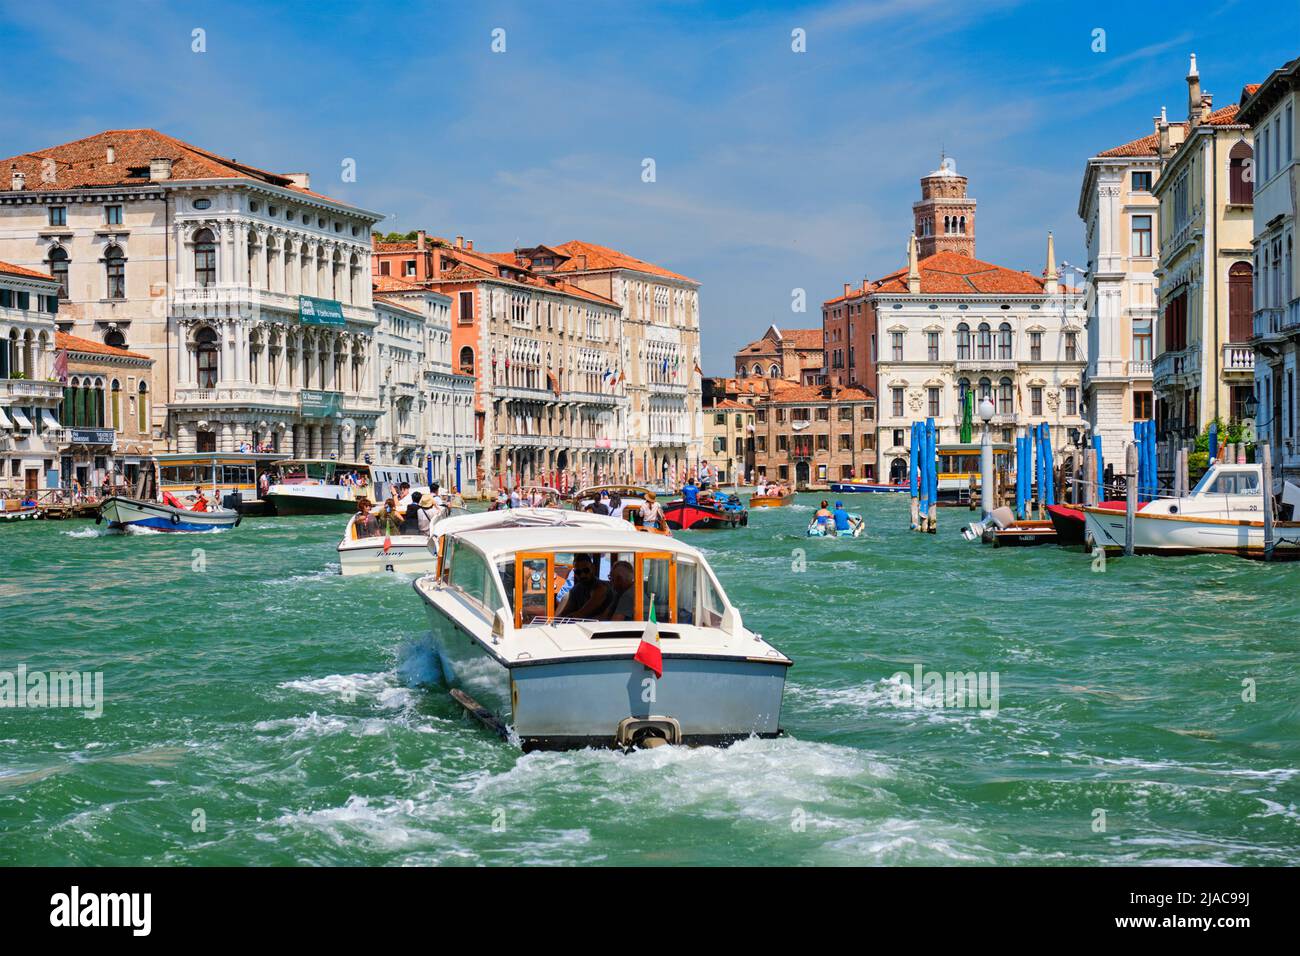 Boats and gondolas on Grand Canal, Venice, Italy Stock Photo